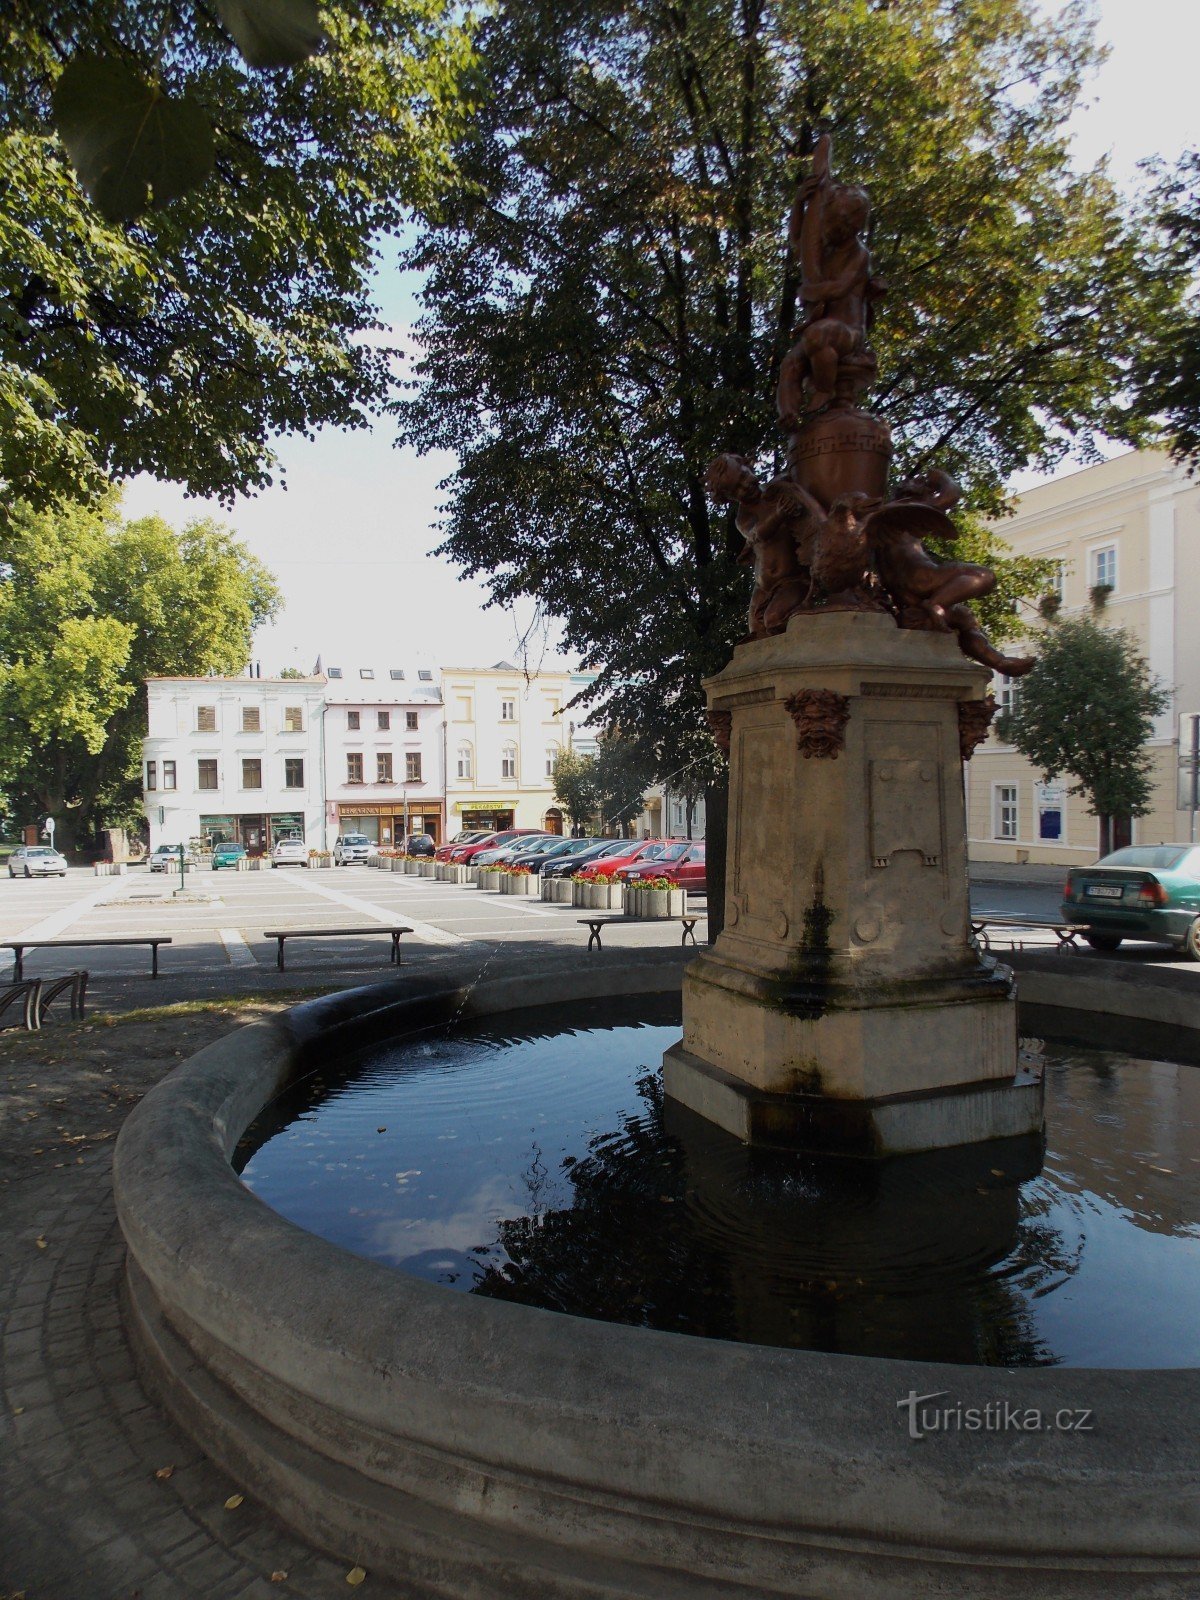 La fontana - la caratteristica dominante di Piazza Masaryk a Odary